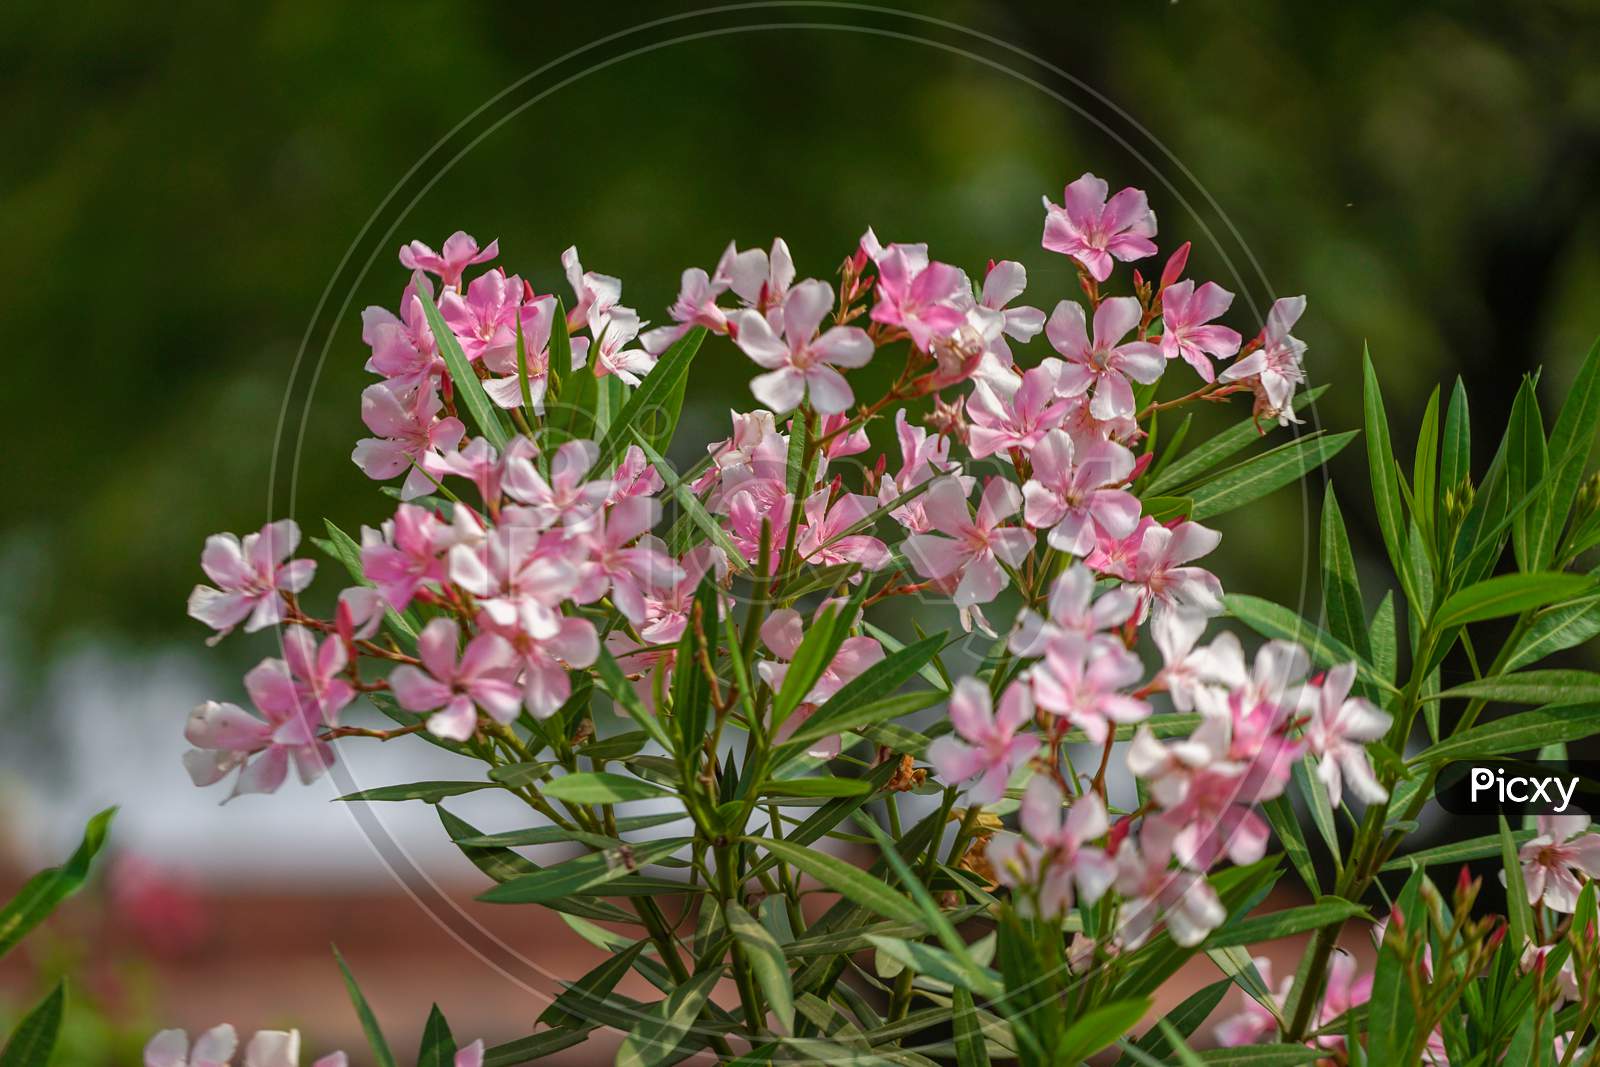 Oleander flowers